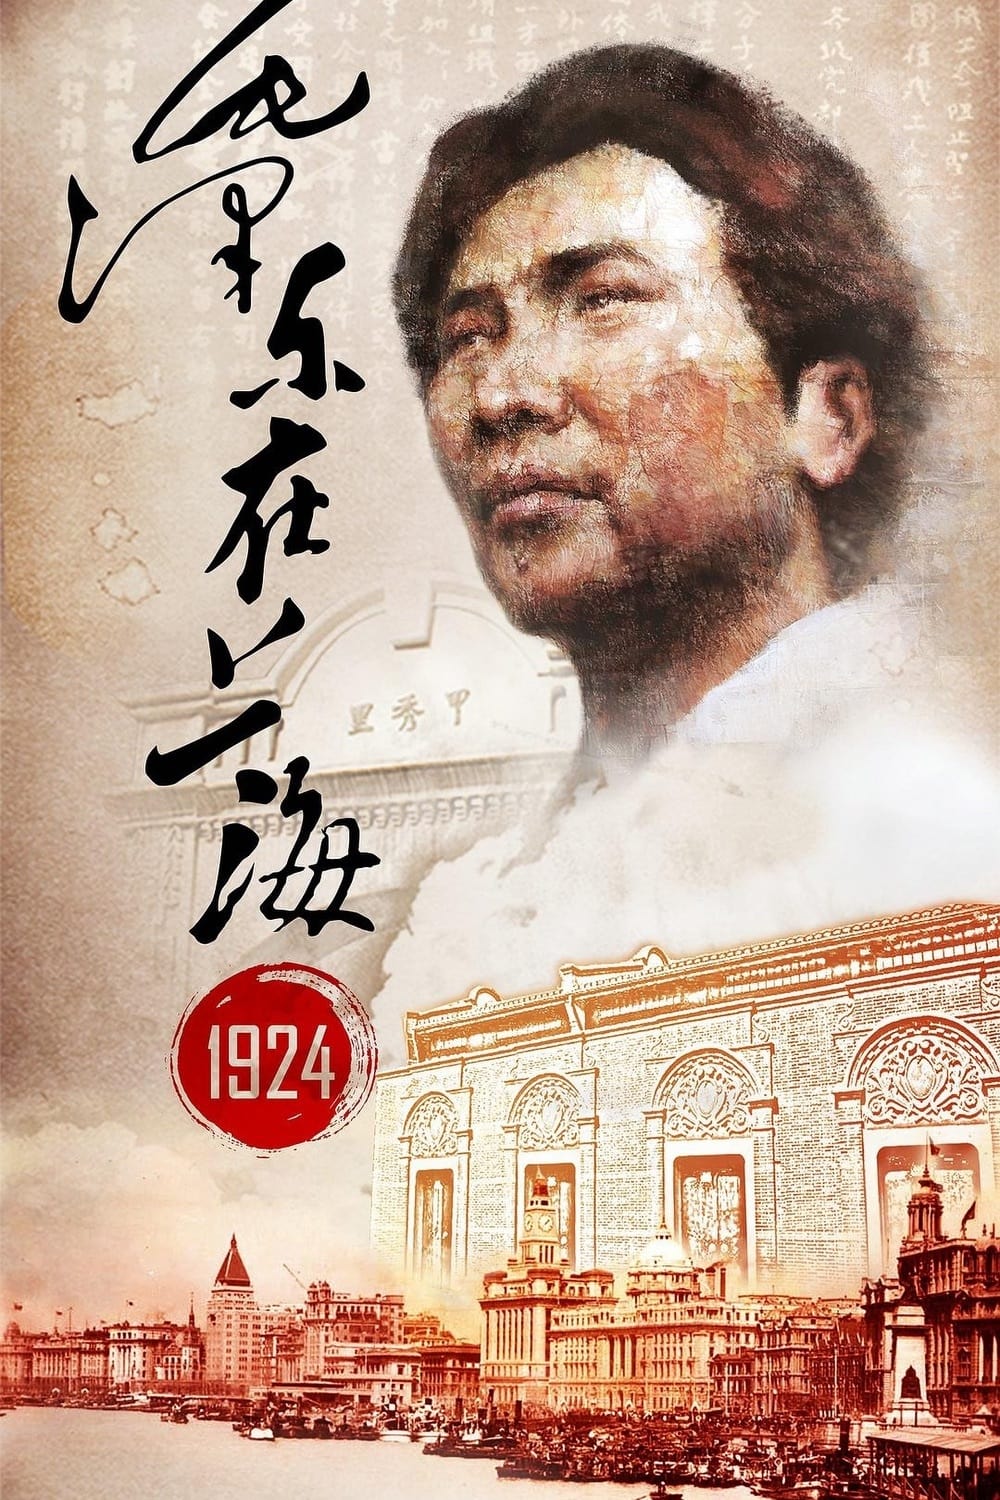 Mao Zedong in Shanghai 1924